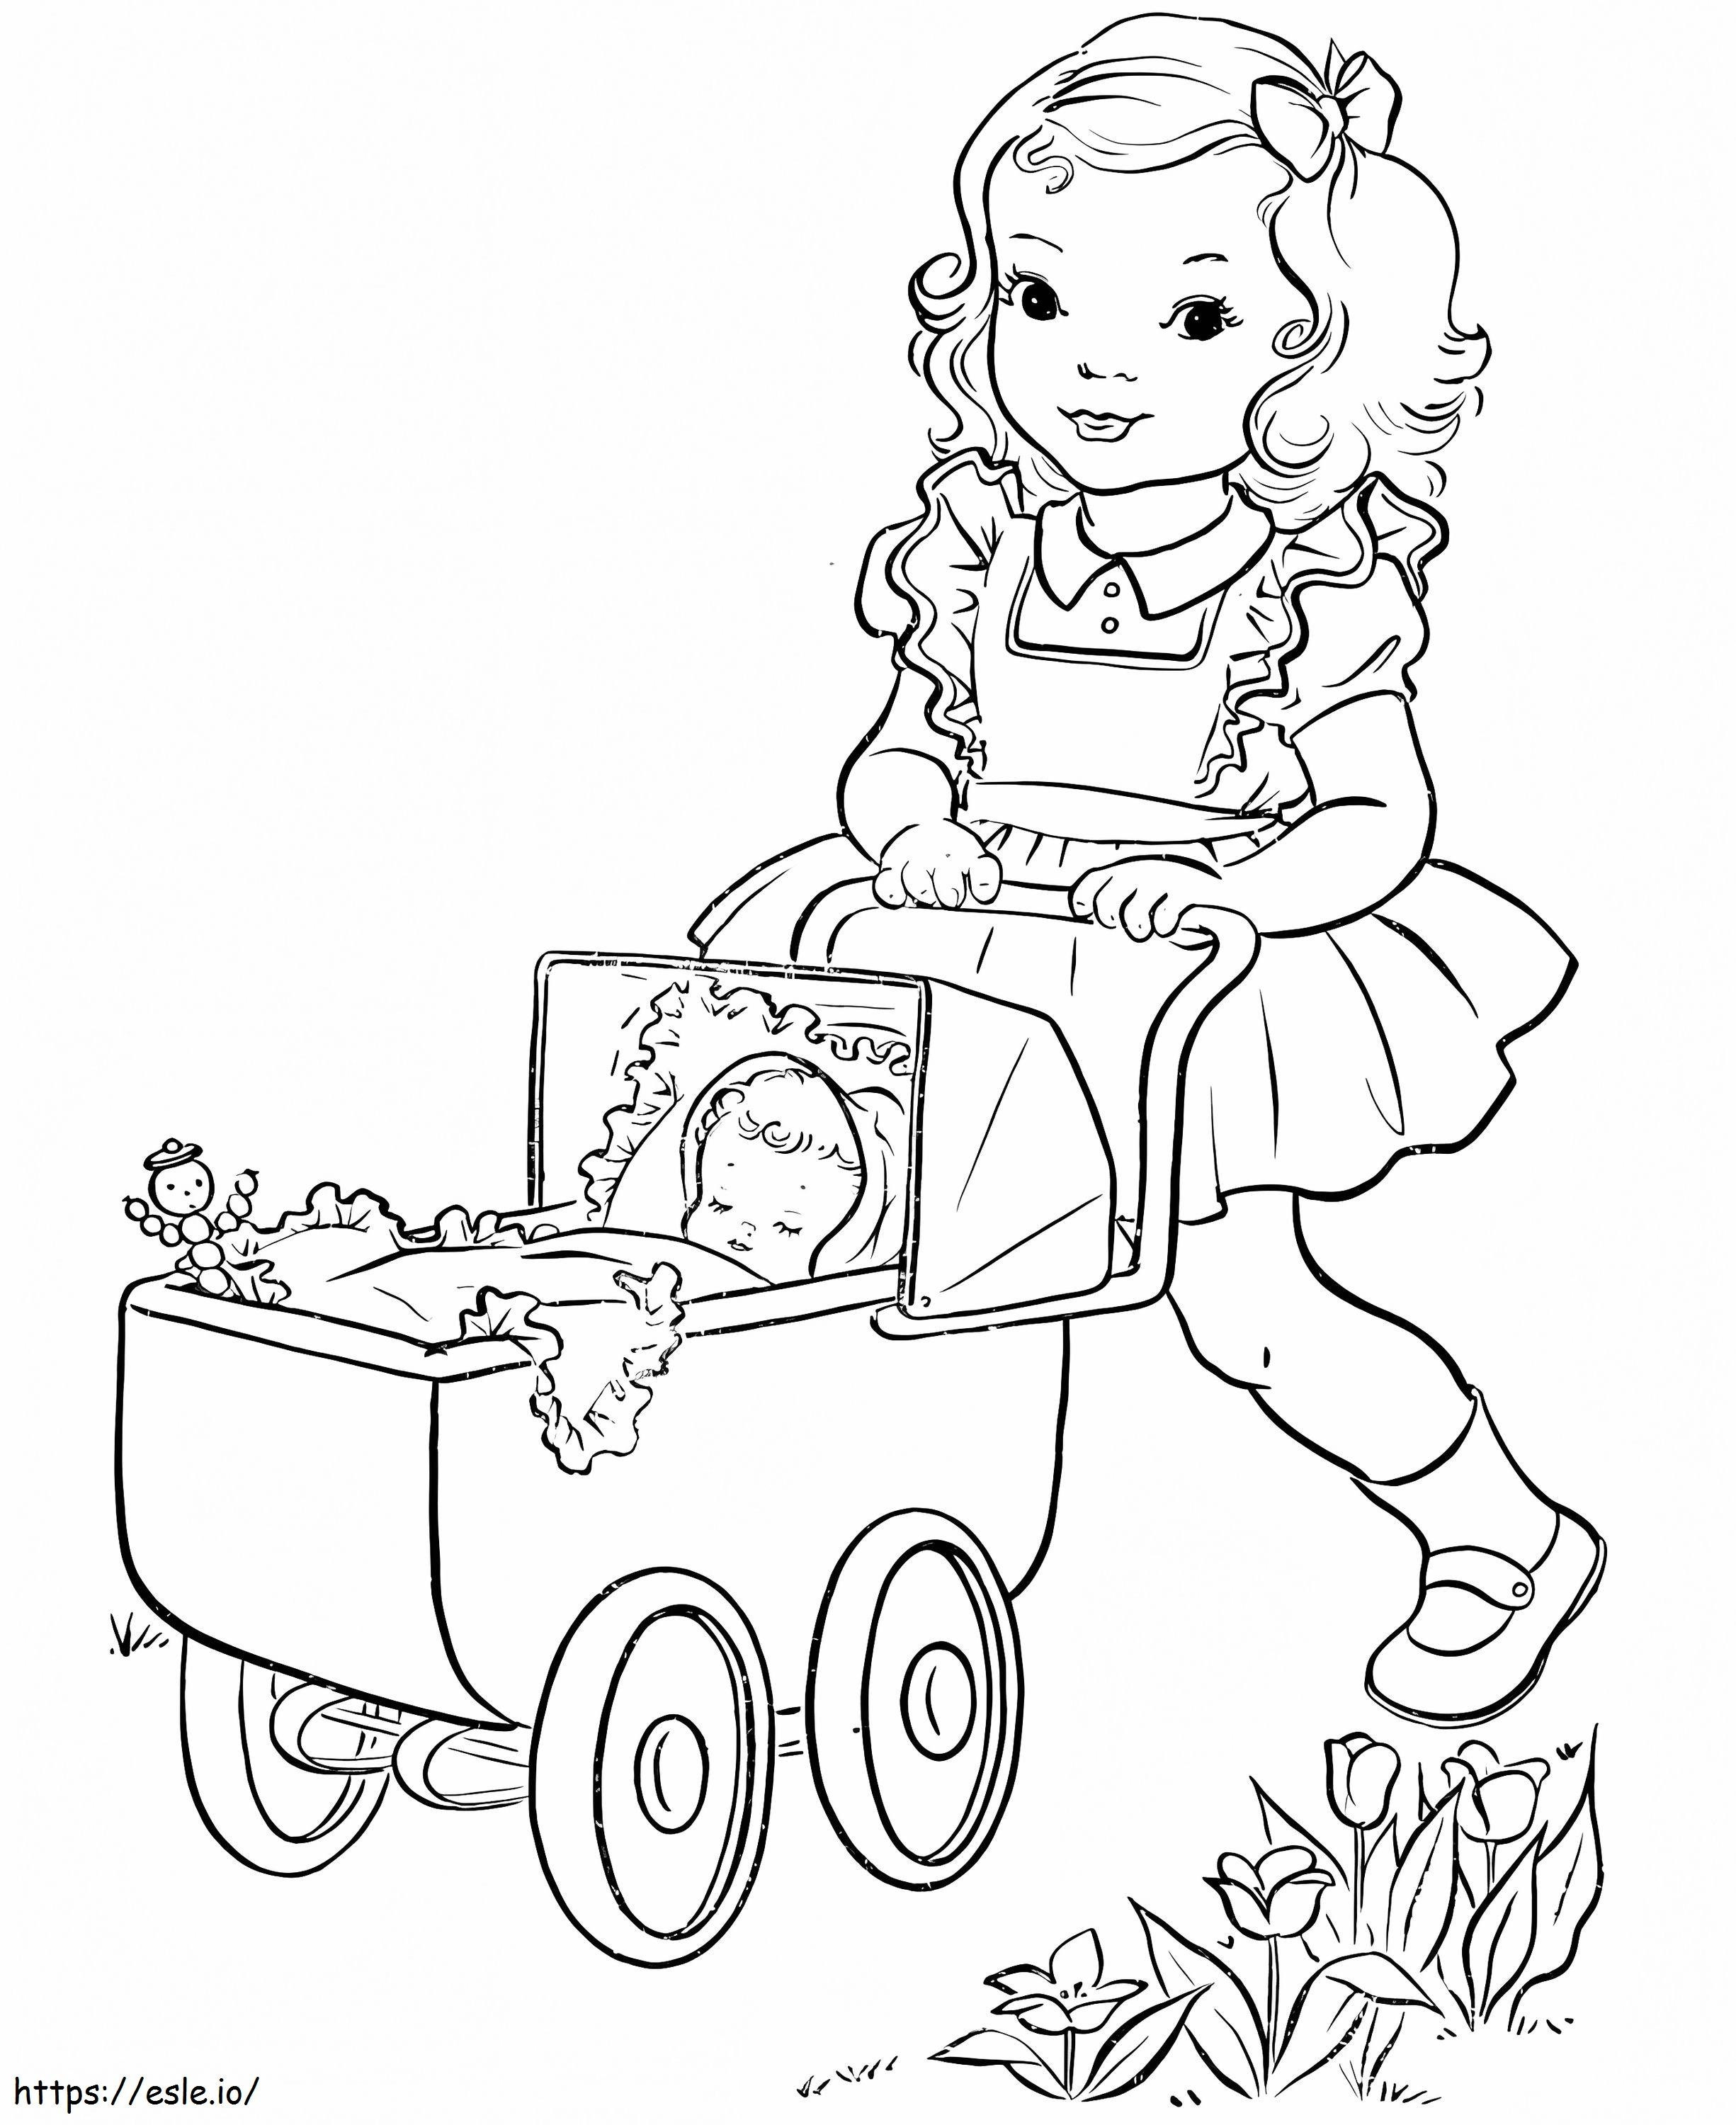 Desenho para colorir de um bebê no carrinho para colorir